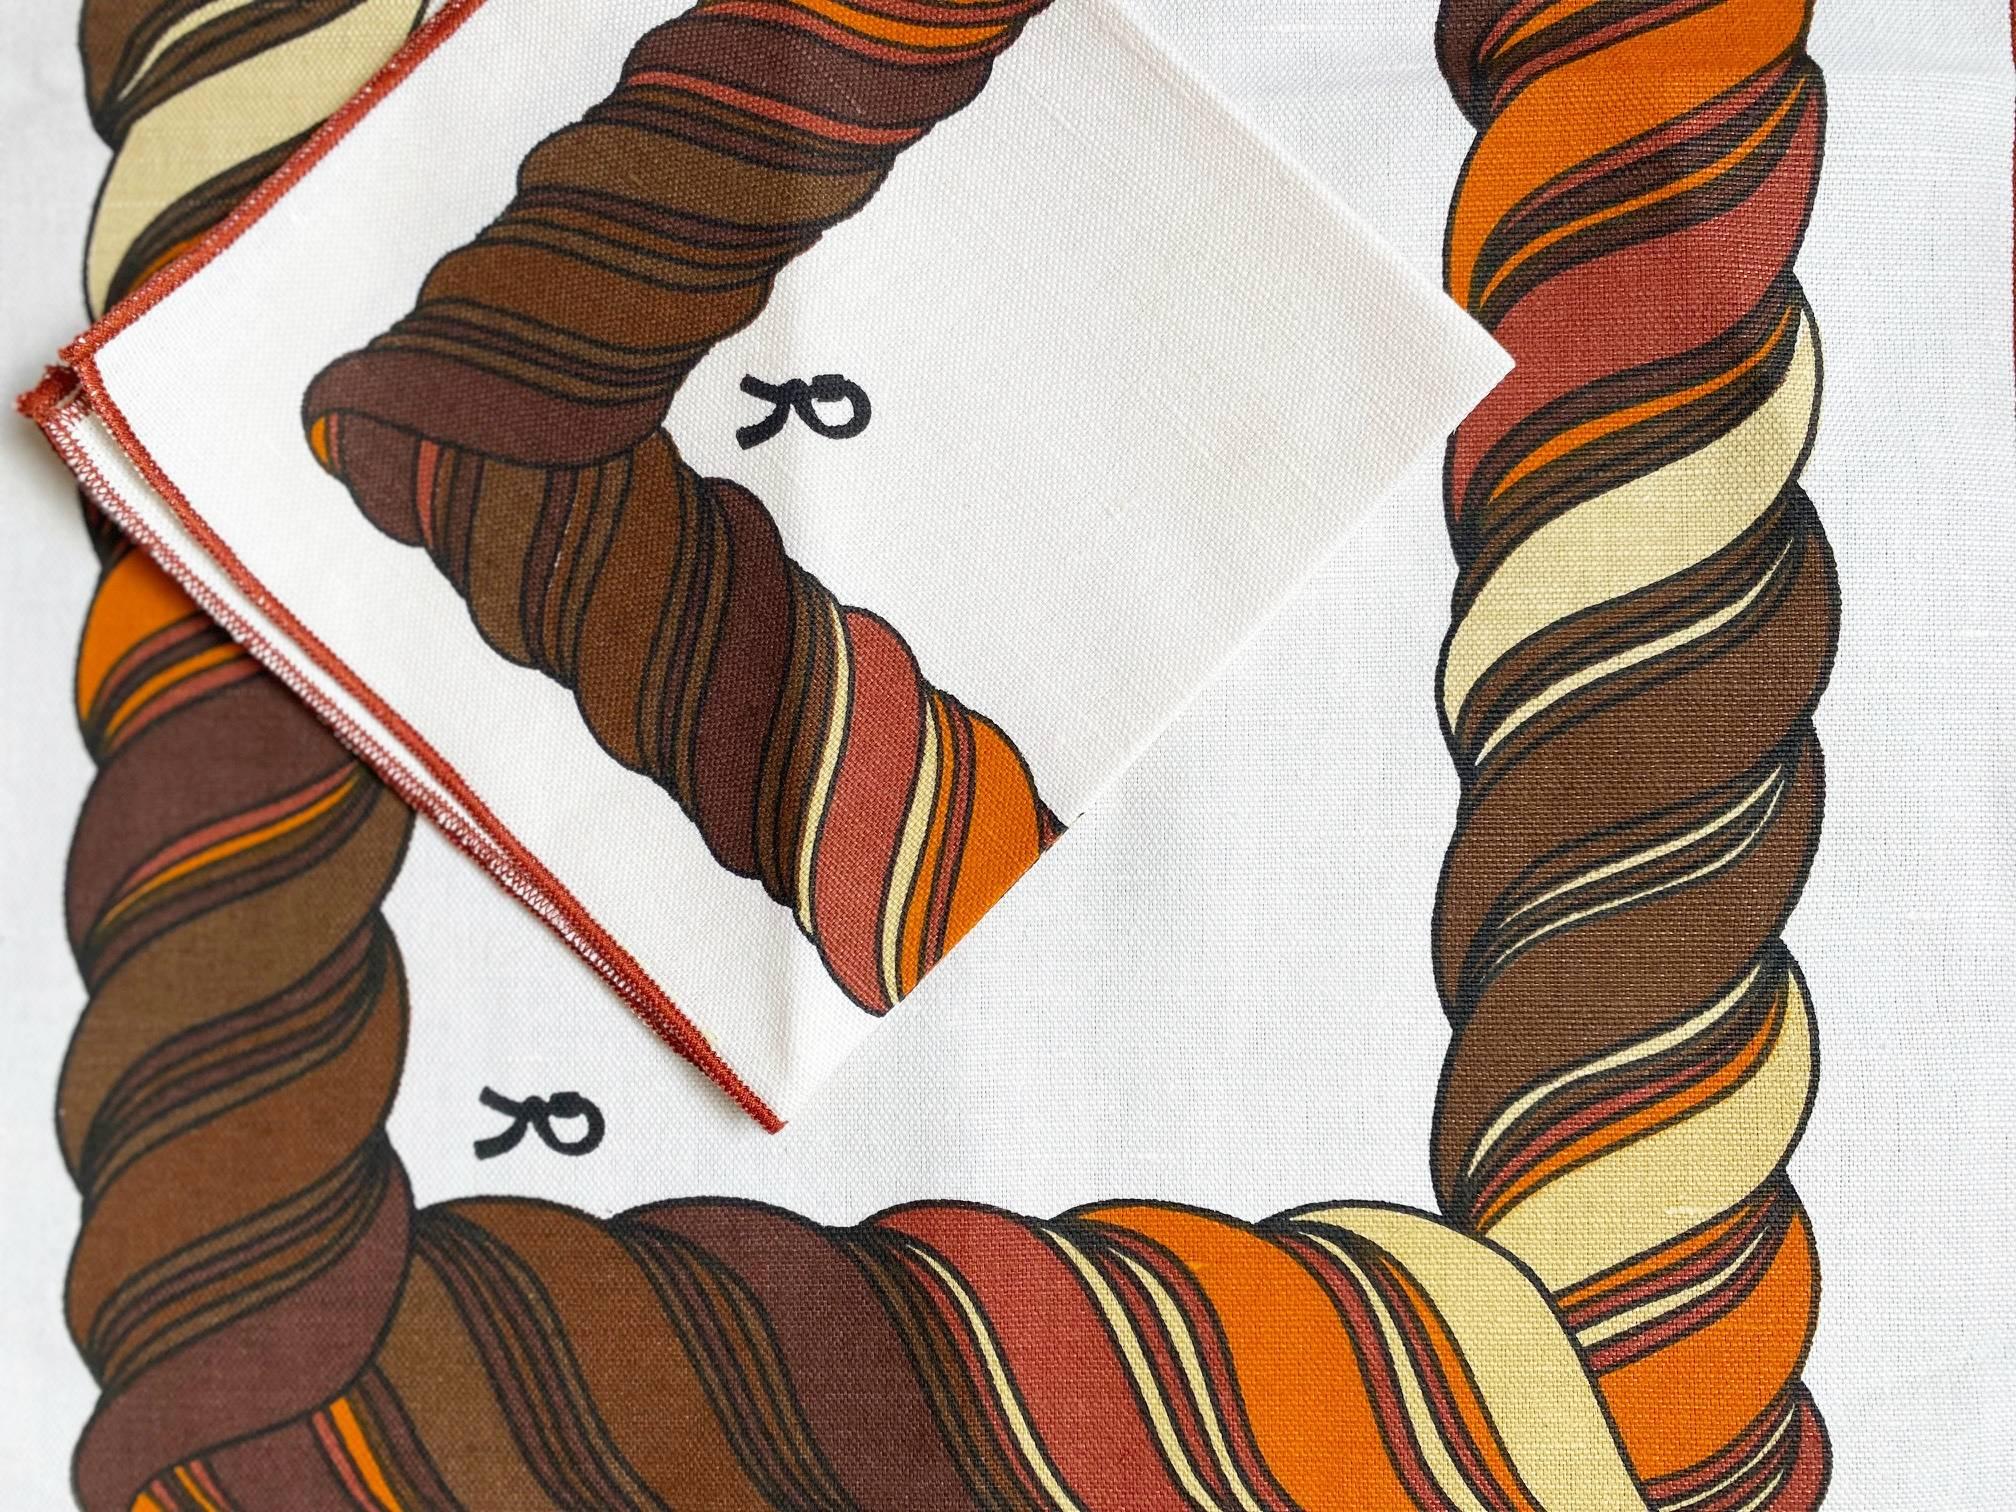 Set de 2 sets de table en lin imprimé Roberta di Camerino, design marron/orange/blanc, le set est livré avec 2 serviettes de table assorties, Made in Italy, fabriqué à partir de matériaux de première qualité, ce set est conçu pour durer et sera à